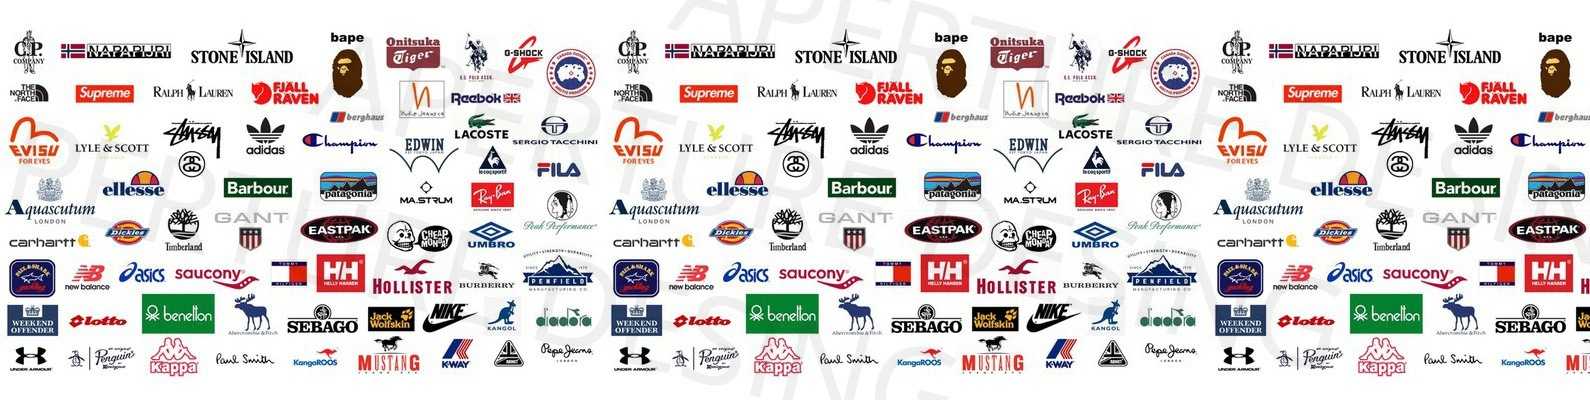 Одежда и обувь h&m: европейское качество, история бренда, ассортимент, стили